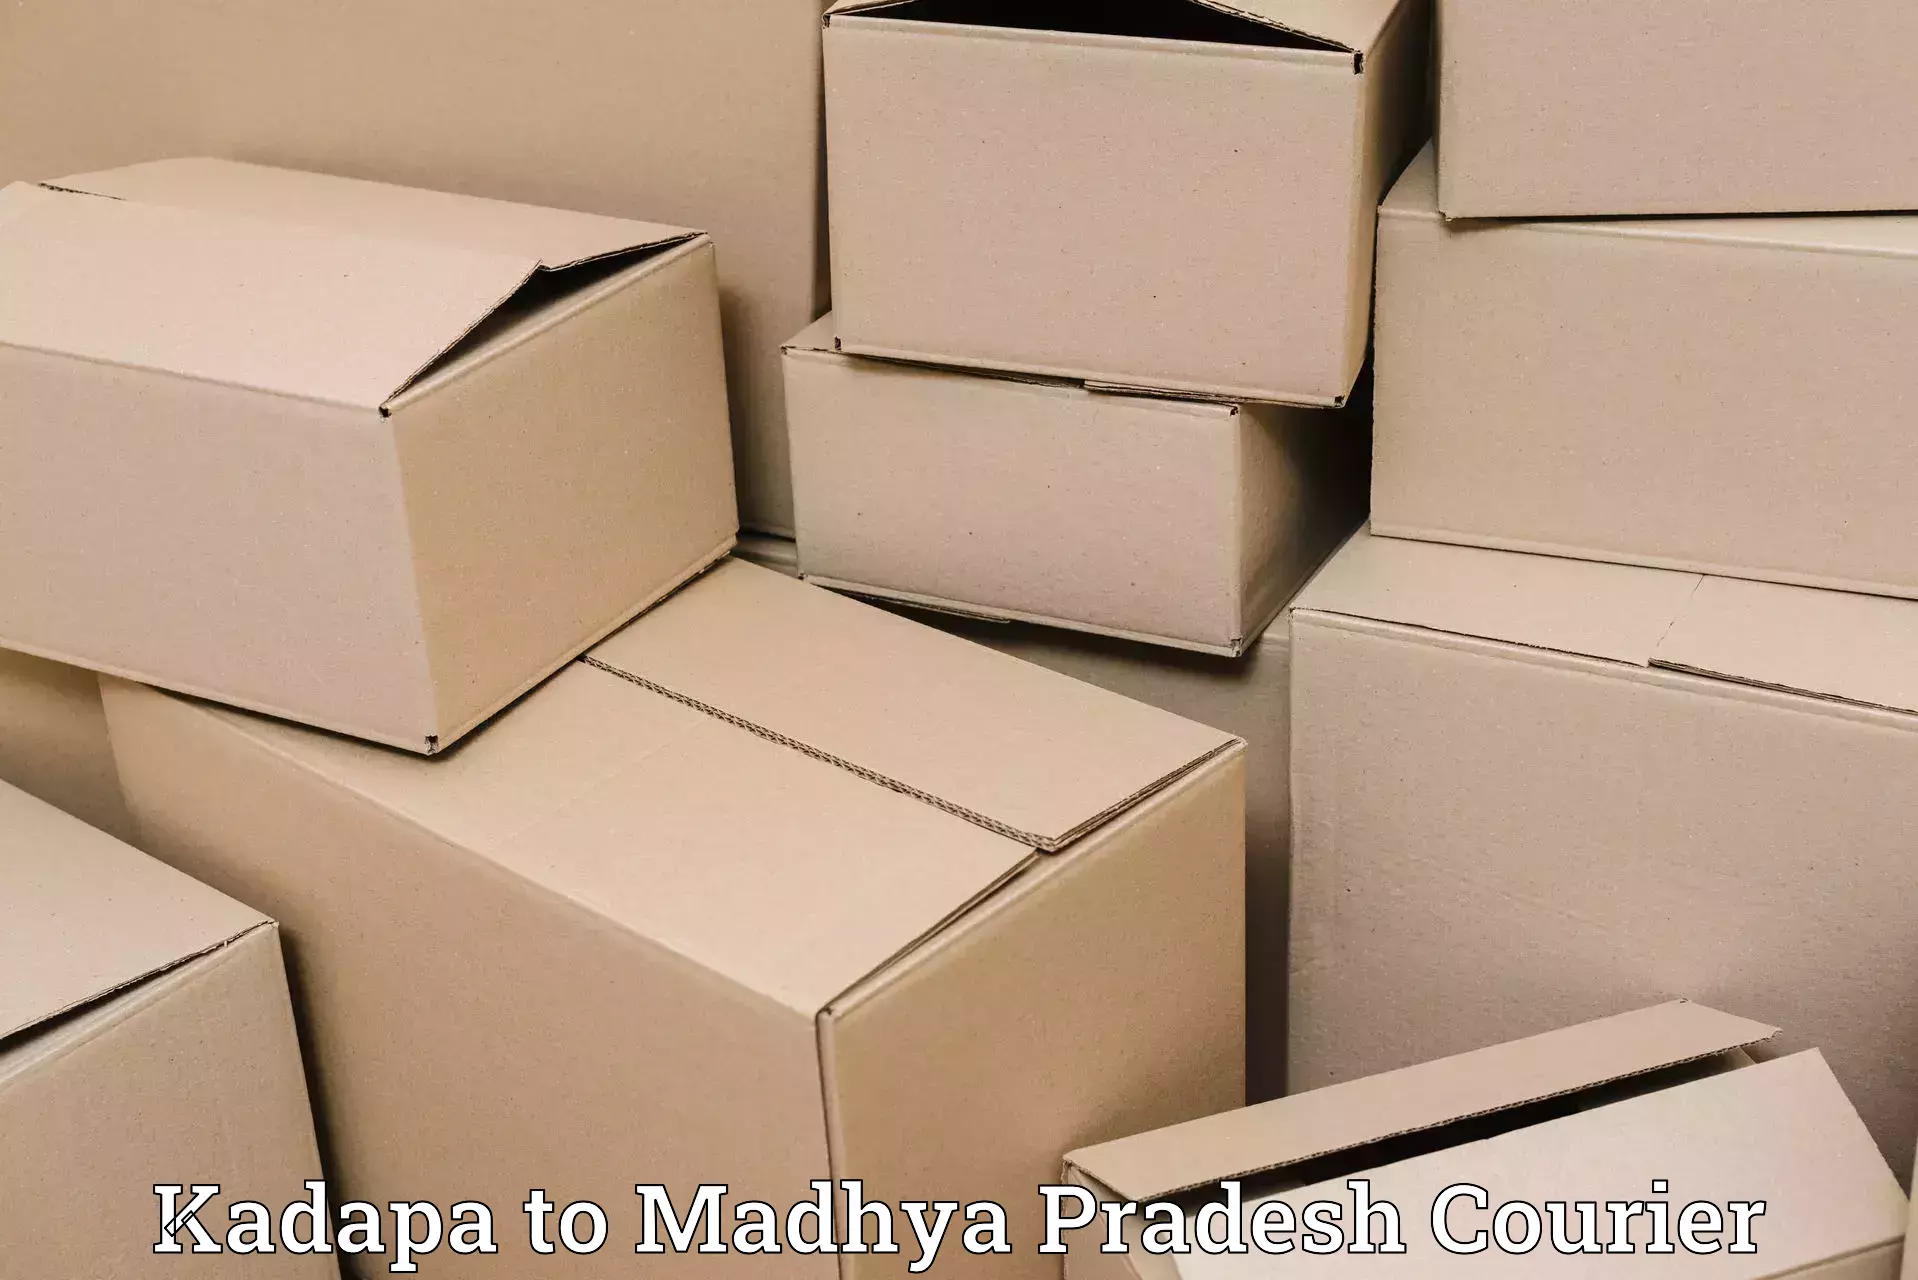 Flexible delivery schedules Kadapa to Multai